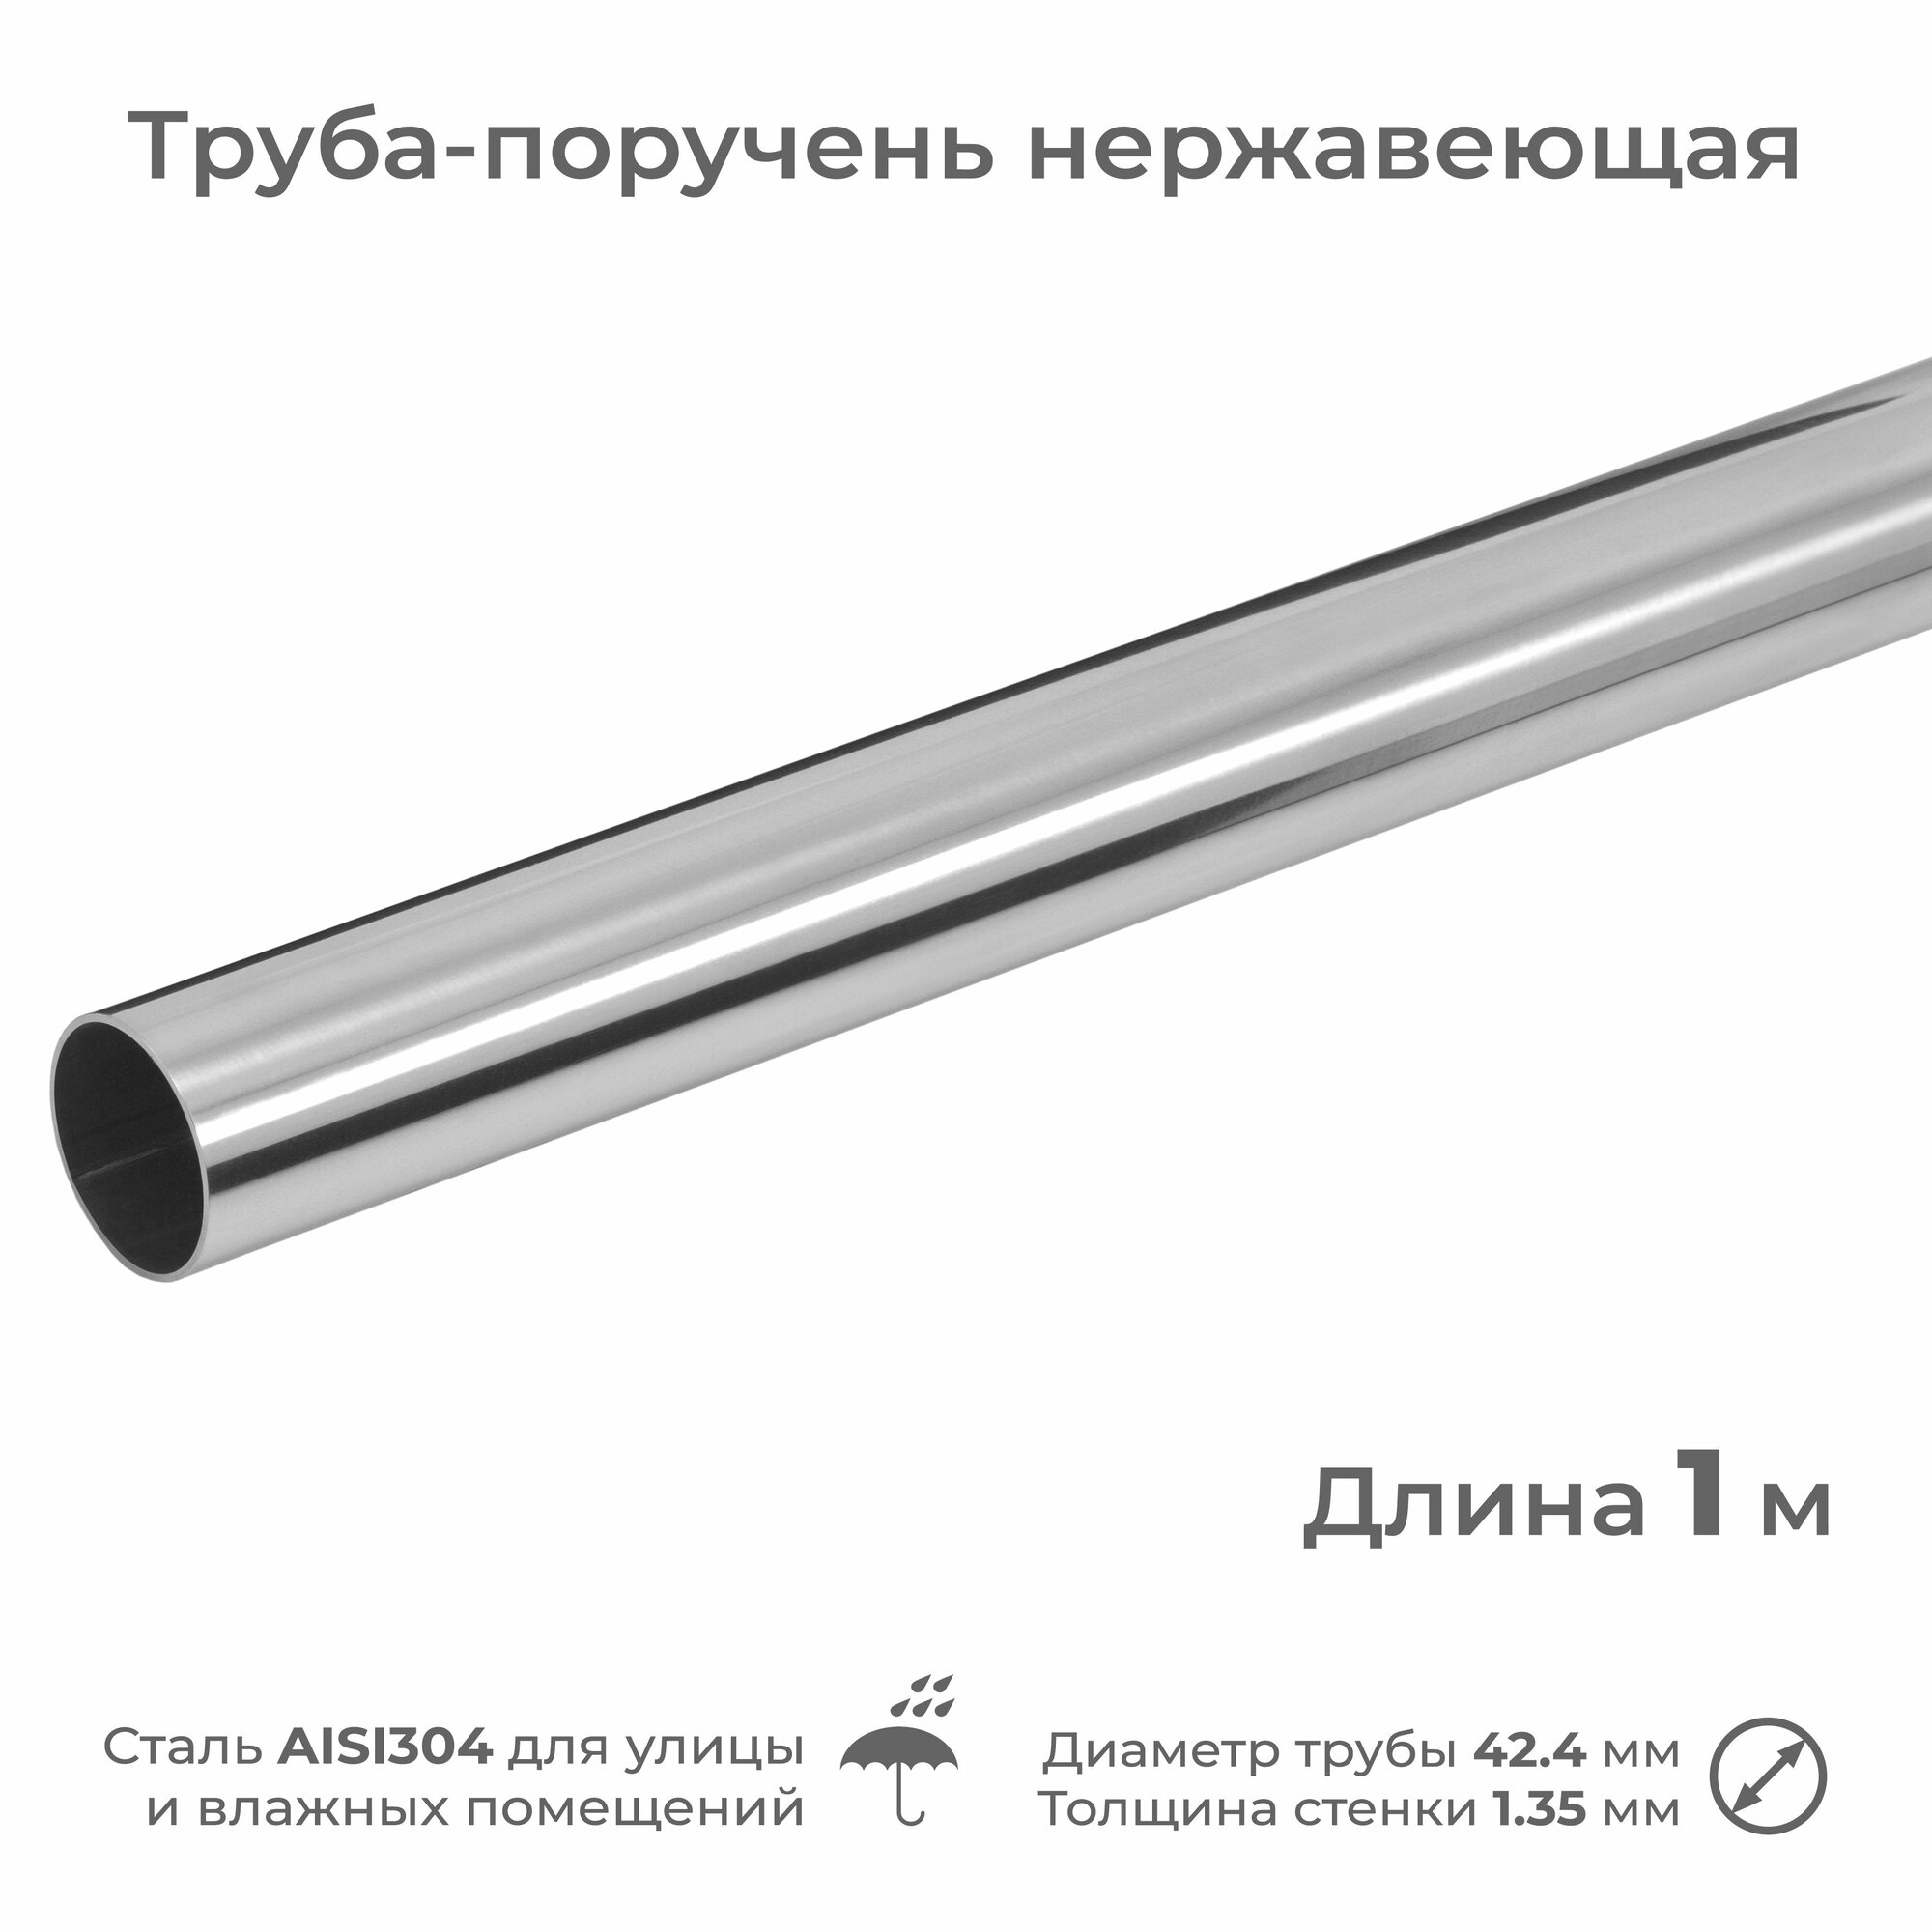 Труба-поручень из нержавеющей стали AISI304 диаметр 42.4 мм длина 1 м